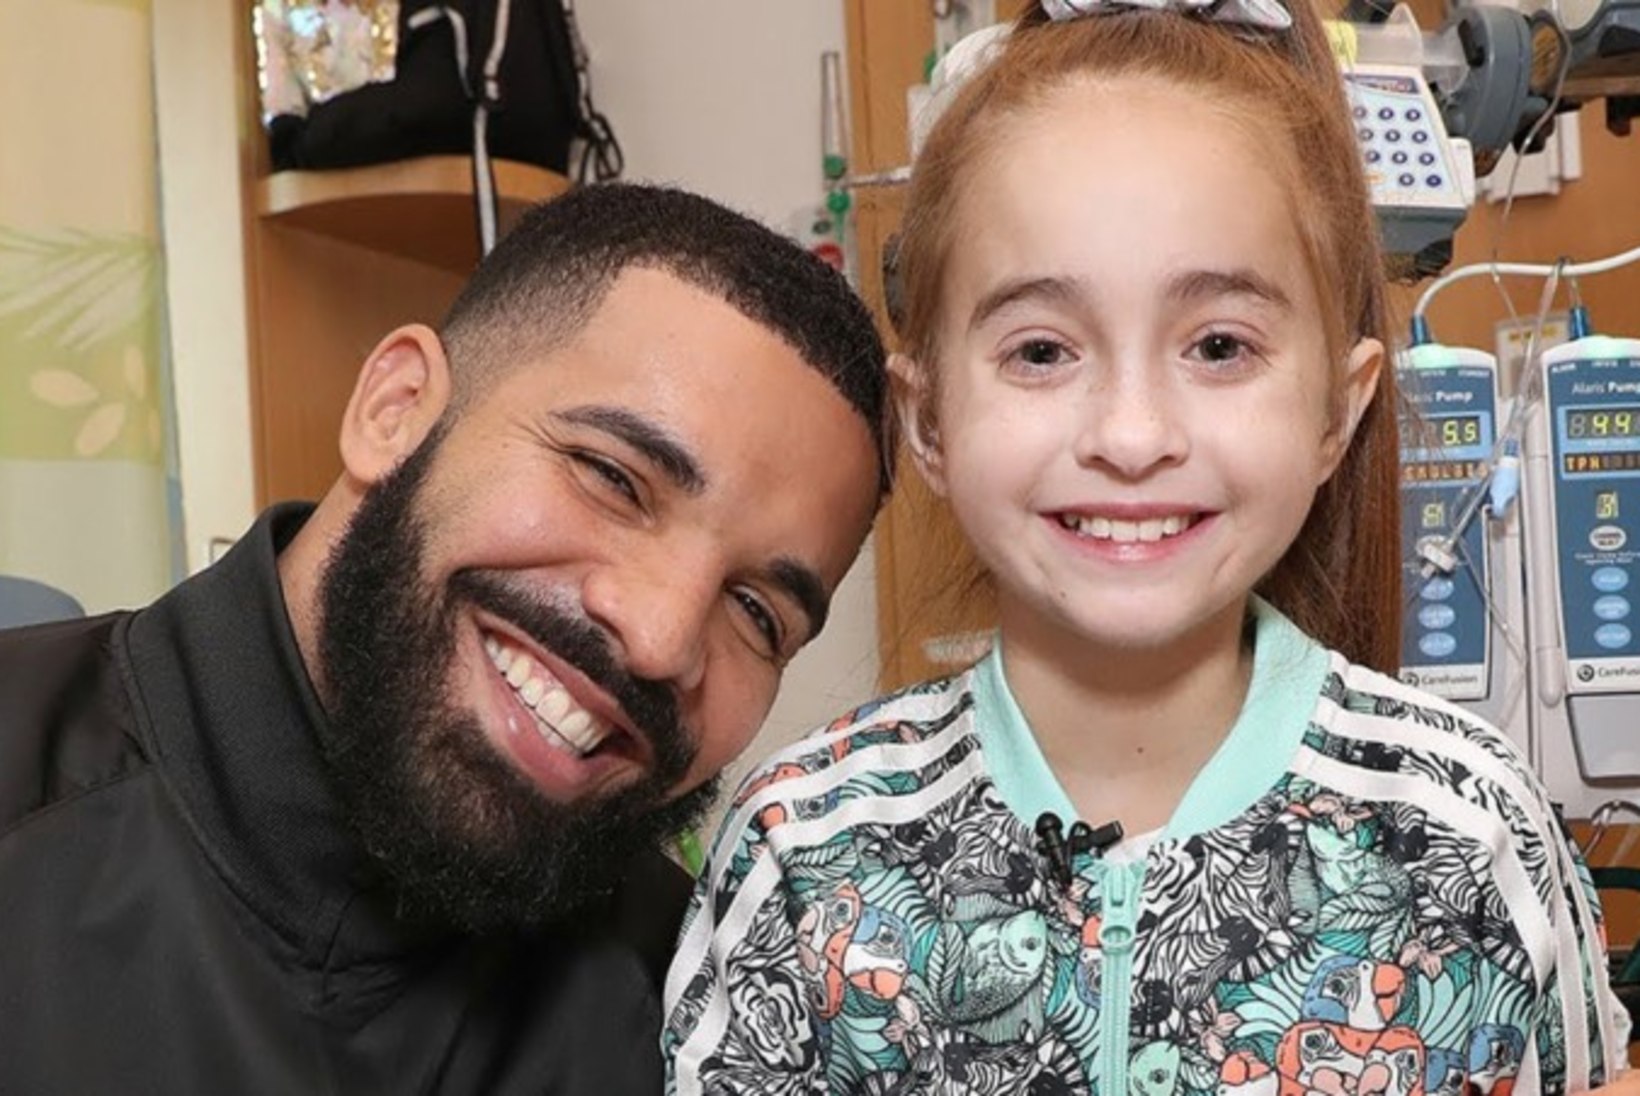 11aastane Drake'i fänn sai pärast superstaari visiiti uue südame